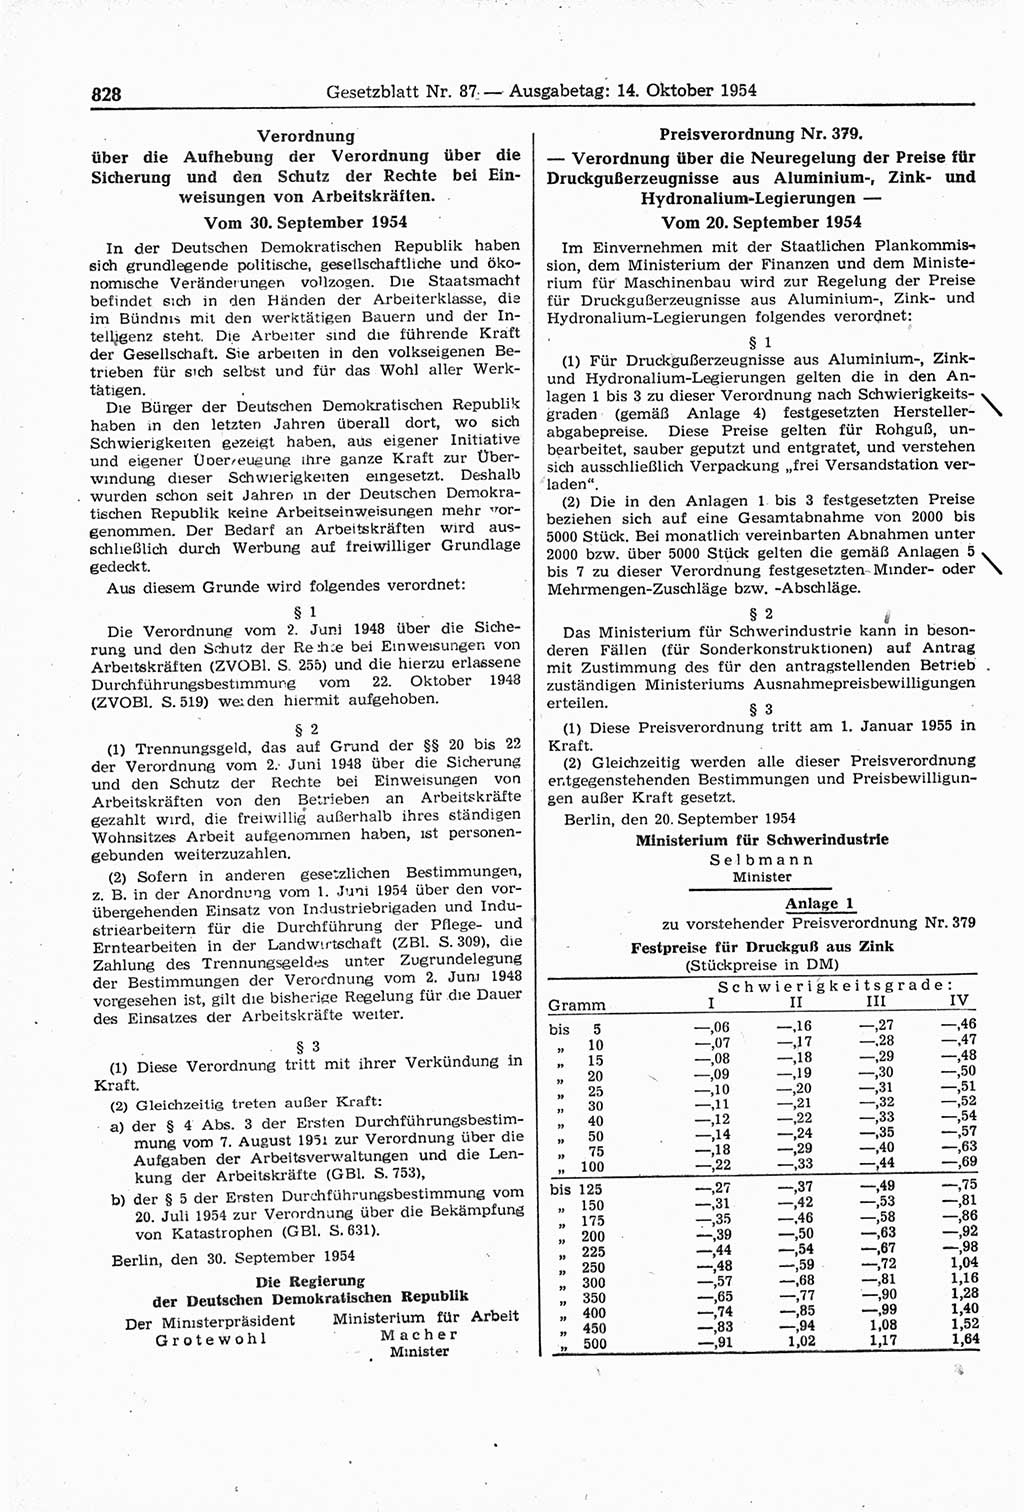 Gesetzblatt (GBl.) der Deutschen Demokratischen Republik (DDR) 1954, Seite 828 (GBl. DDR 1954, S. 828)